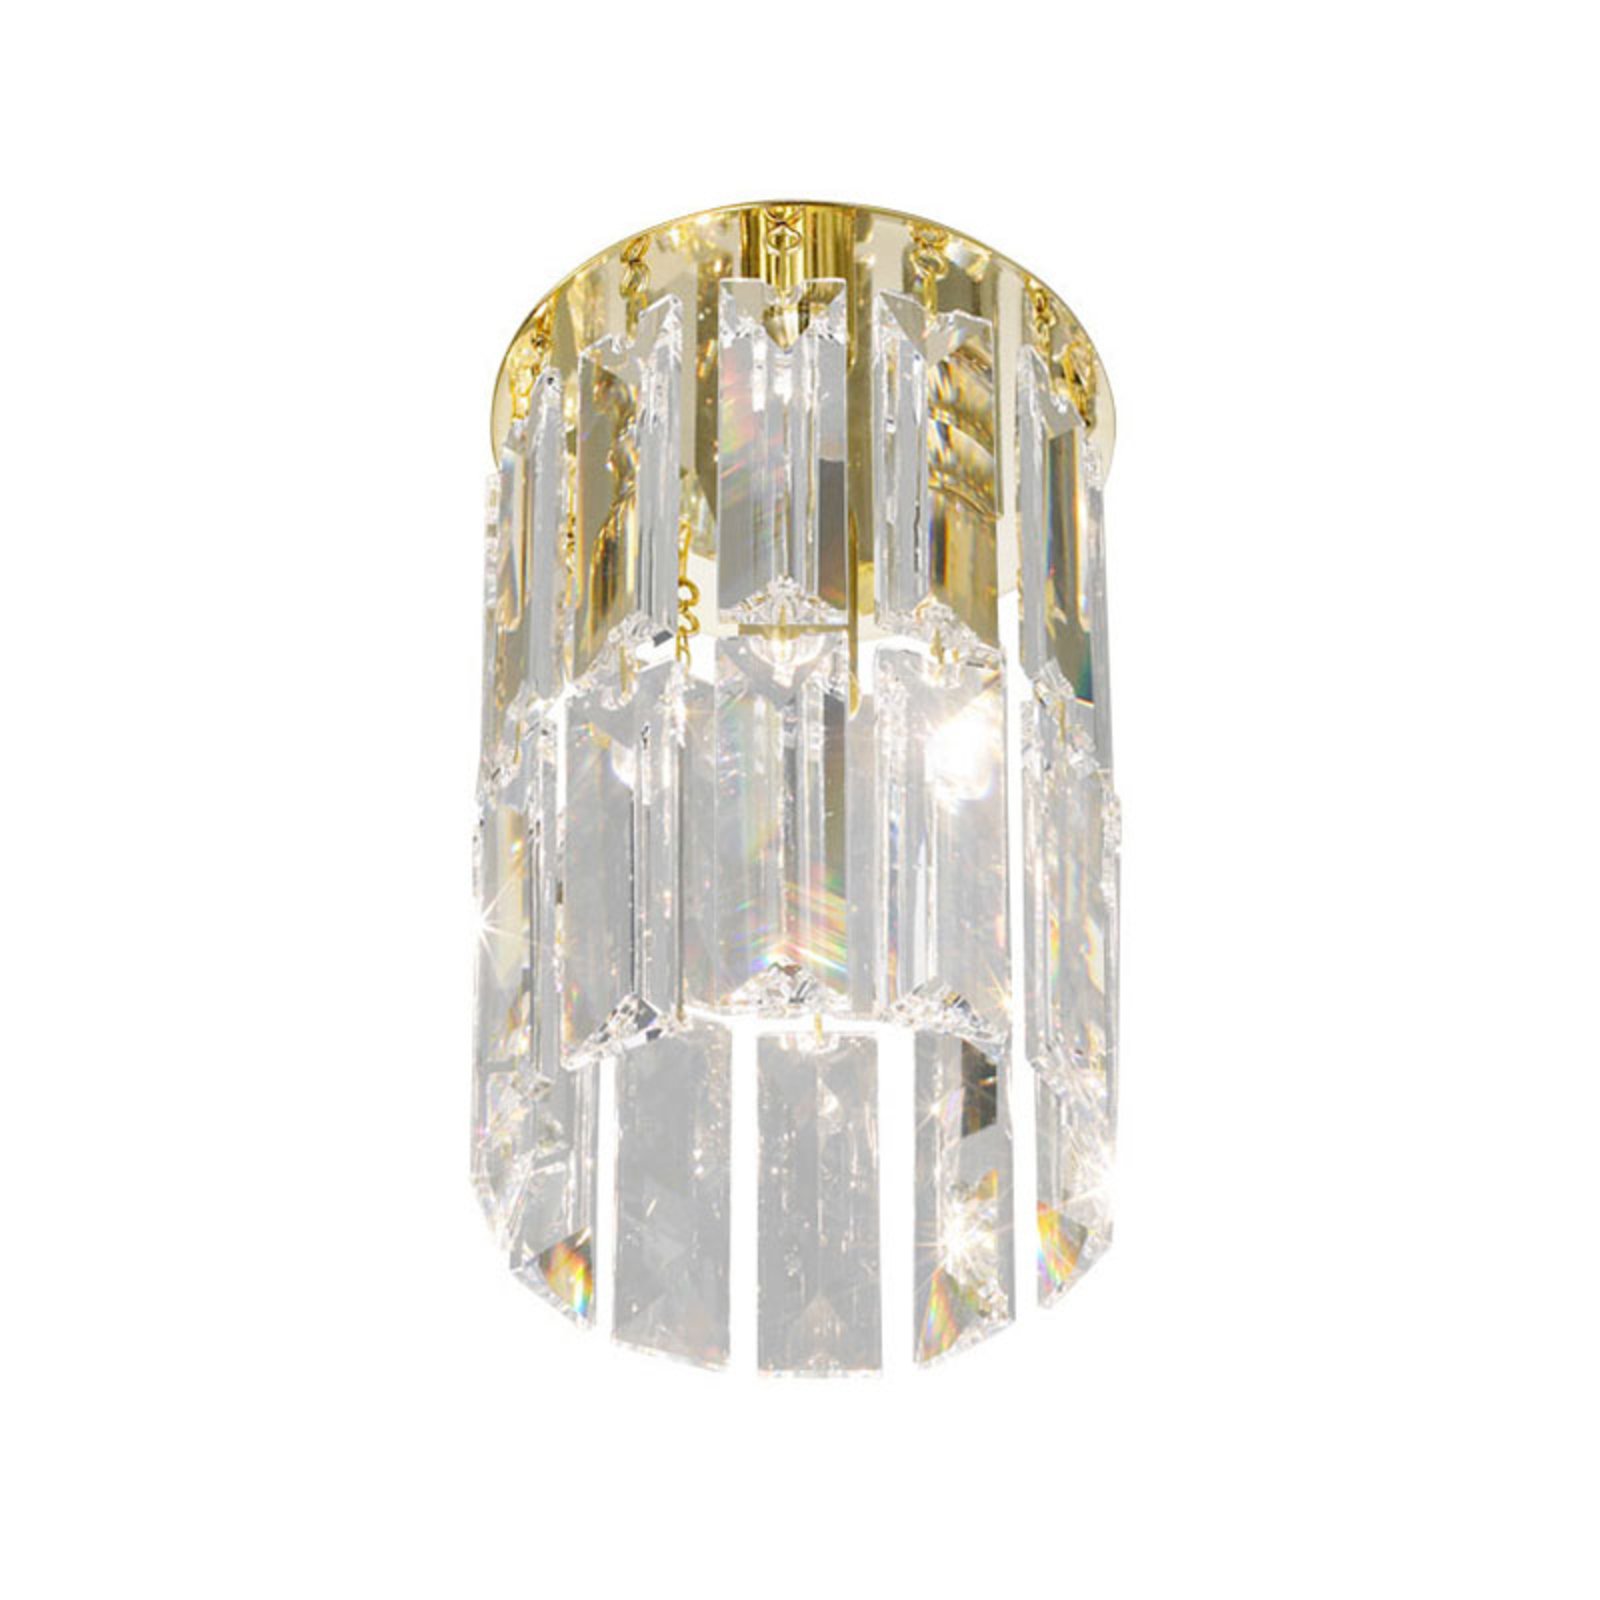 KOLARZ Prisma Deckenlampe, Kristall und Gold 24 kt